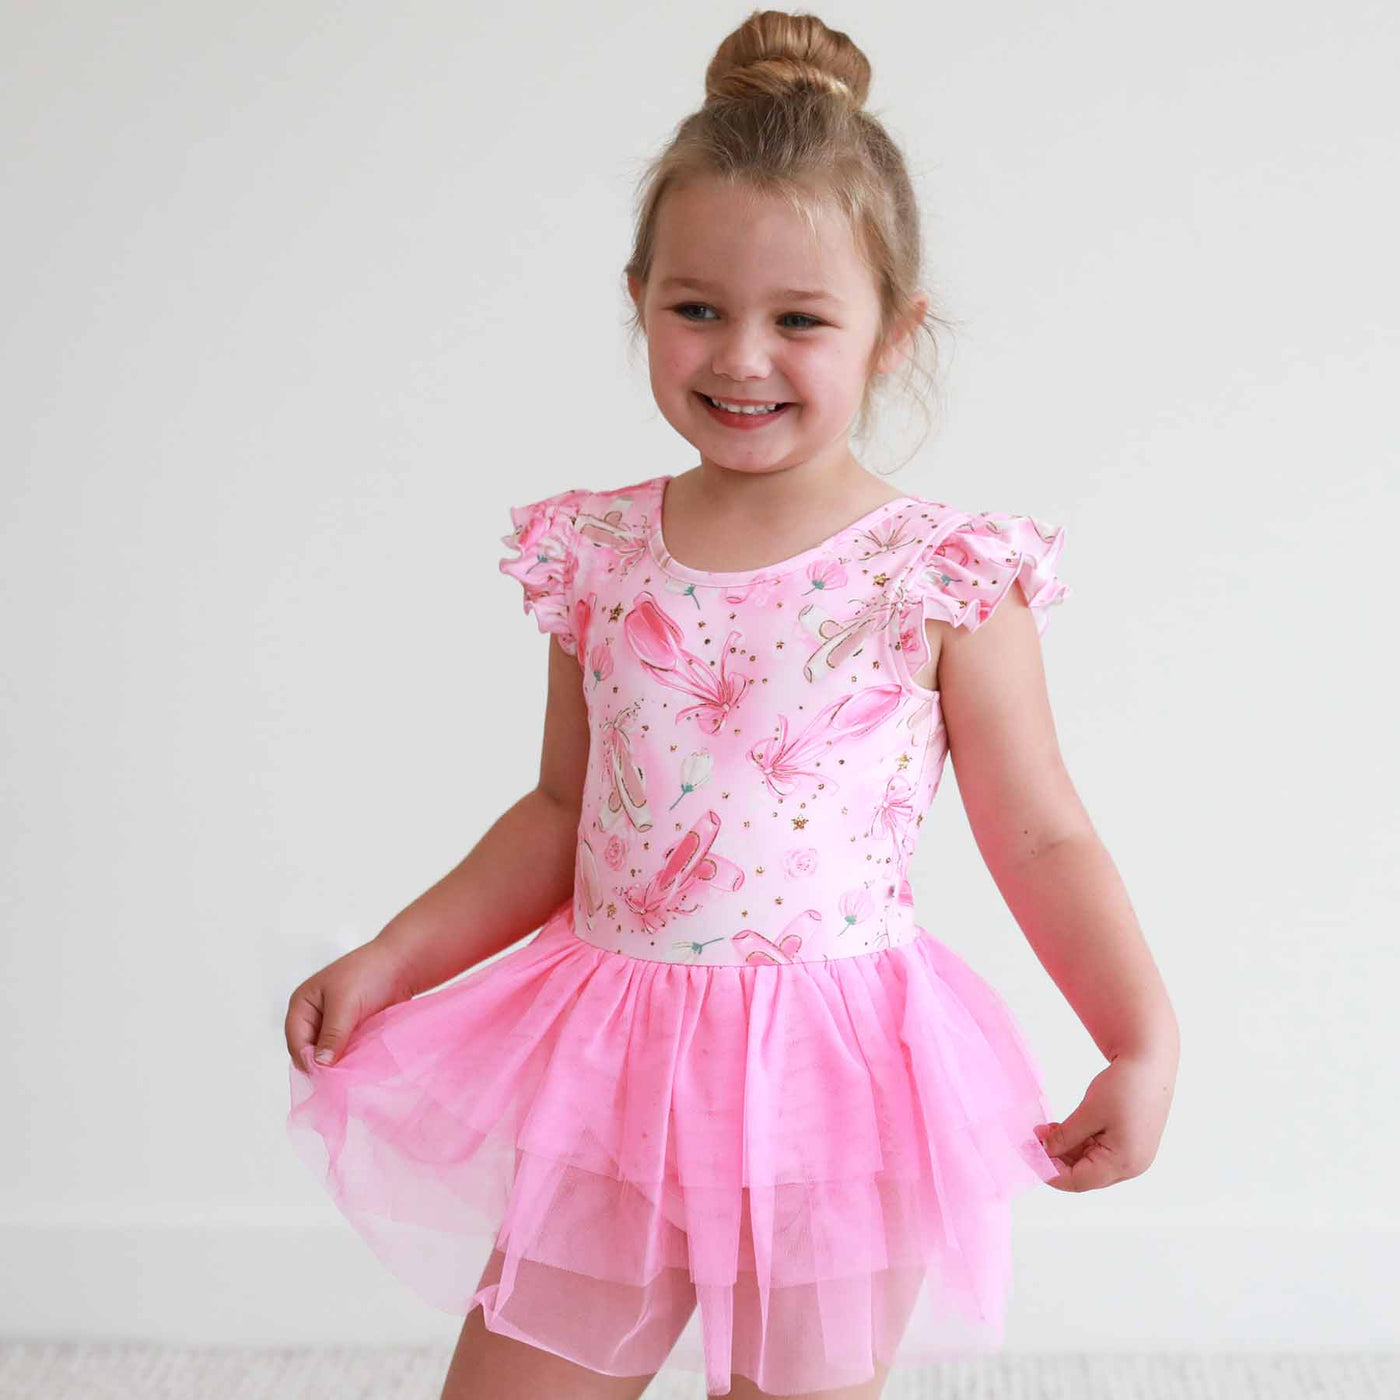 ballet leotard for girls with tulle skirt 